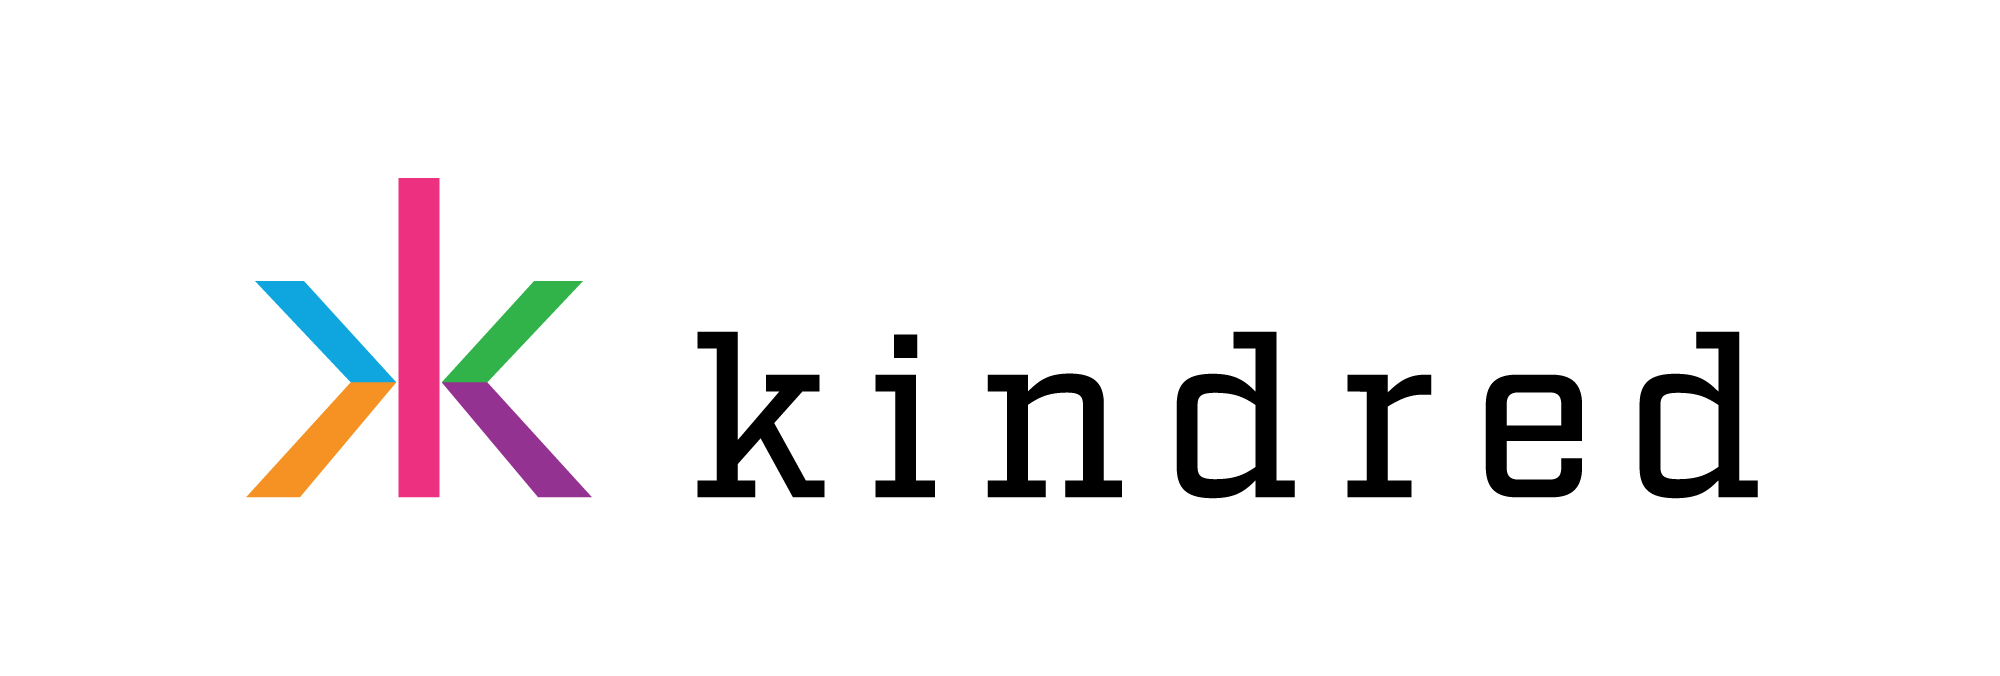 Kindred Brand Logo